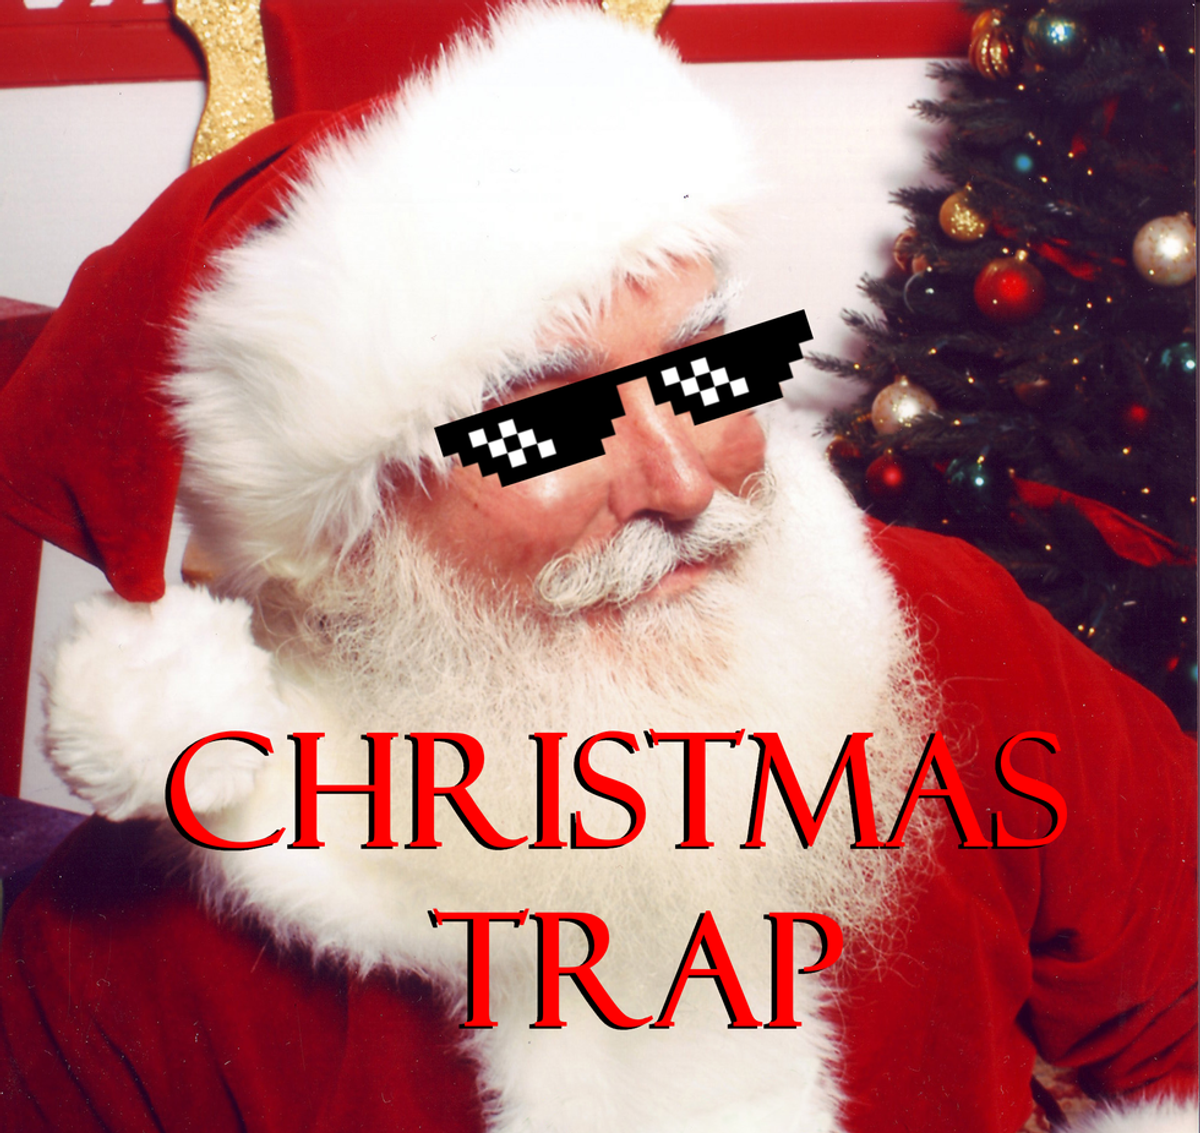 Tis’ The Season For Christmas Trap